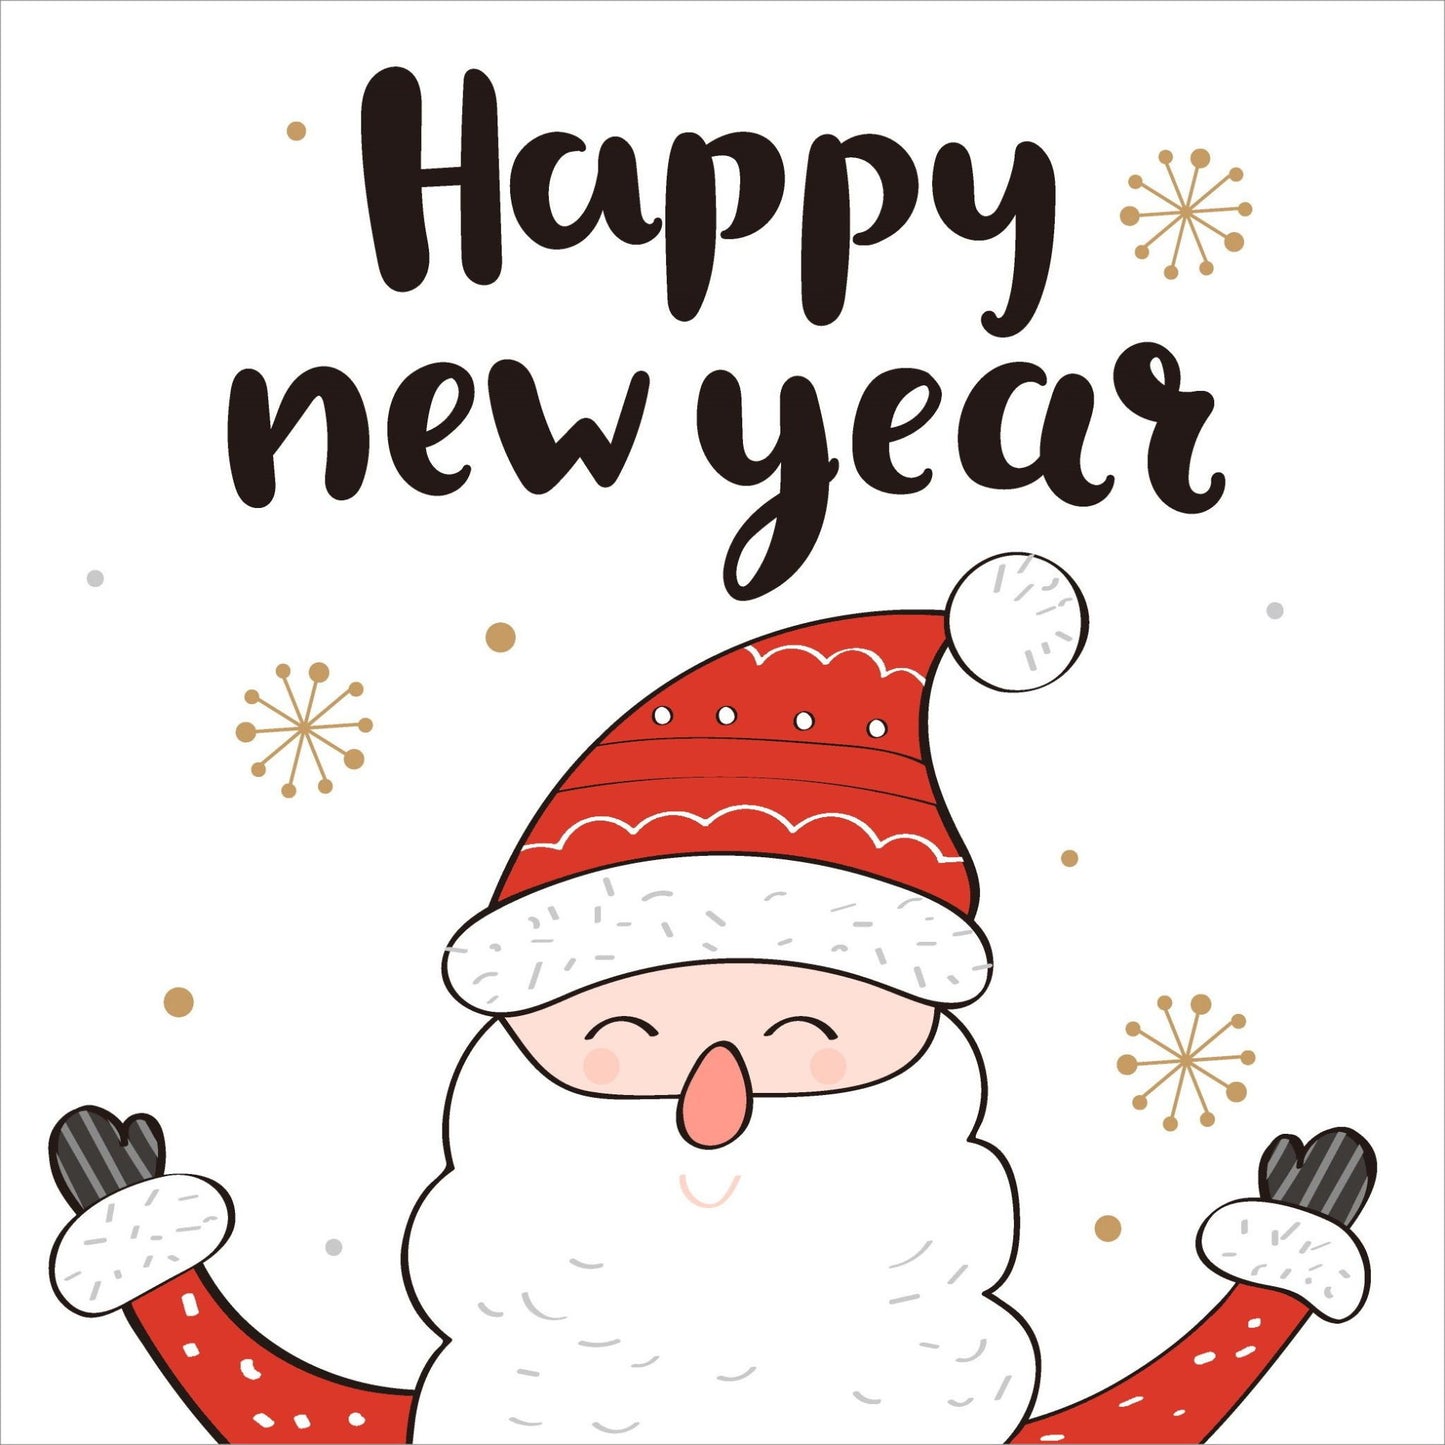 Søte julekort i håndtegnet cartoon. 10 pk. Fargemyanser i rød, grå, sort, hvit og gull.  Motiv av en blid julenisse. Tekst på kort "happy new year"